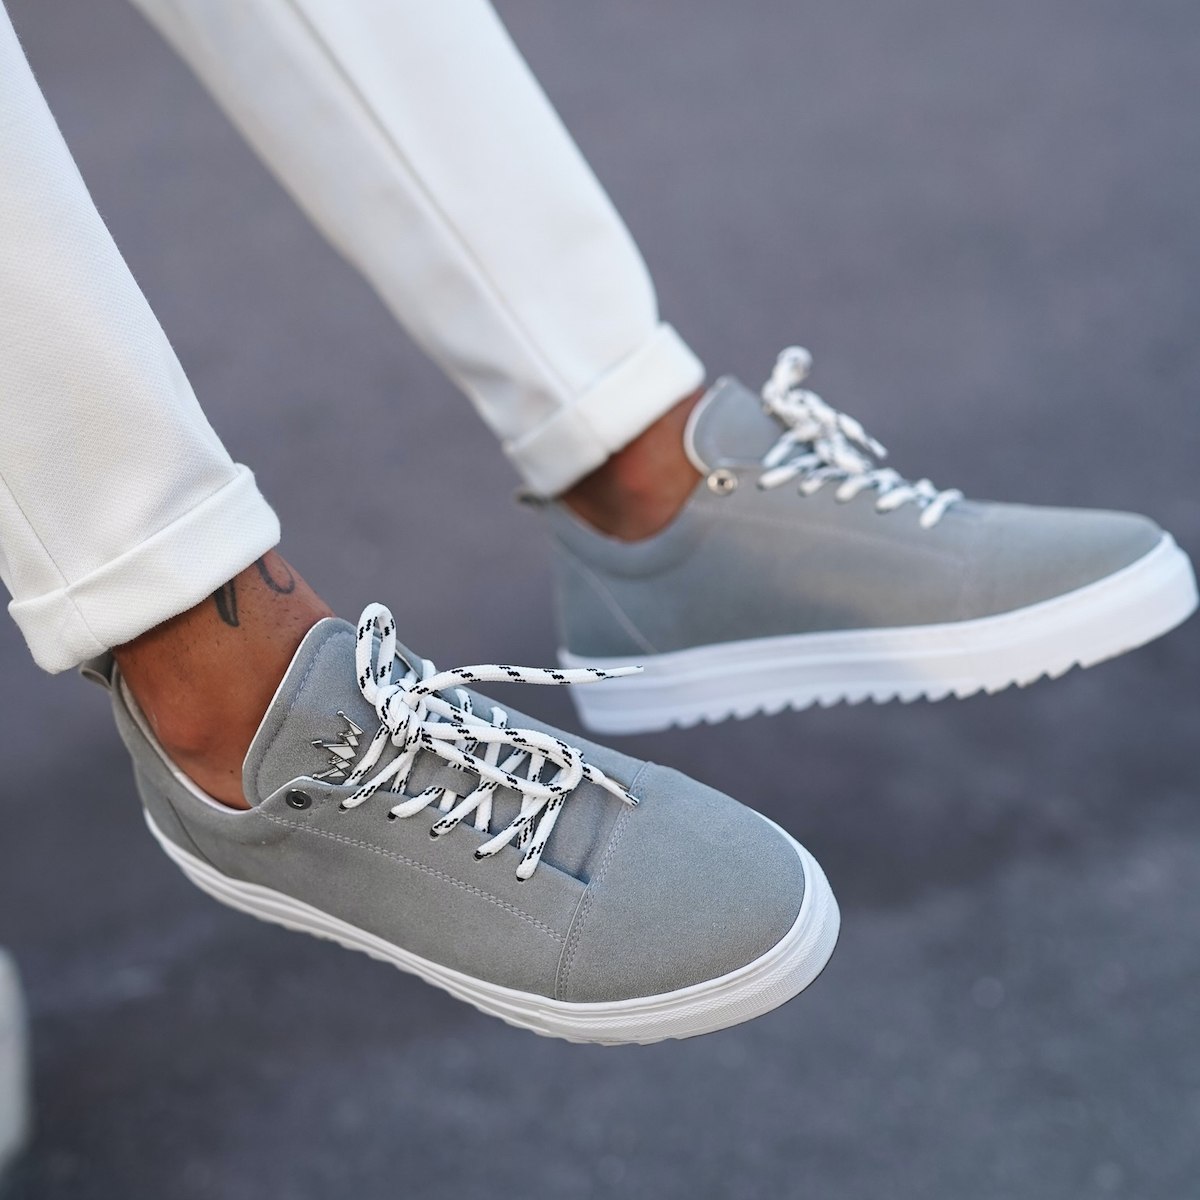 Buy Asics Japan S Grey Sneakers for Men at Best Price @ Tata CLiQ